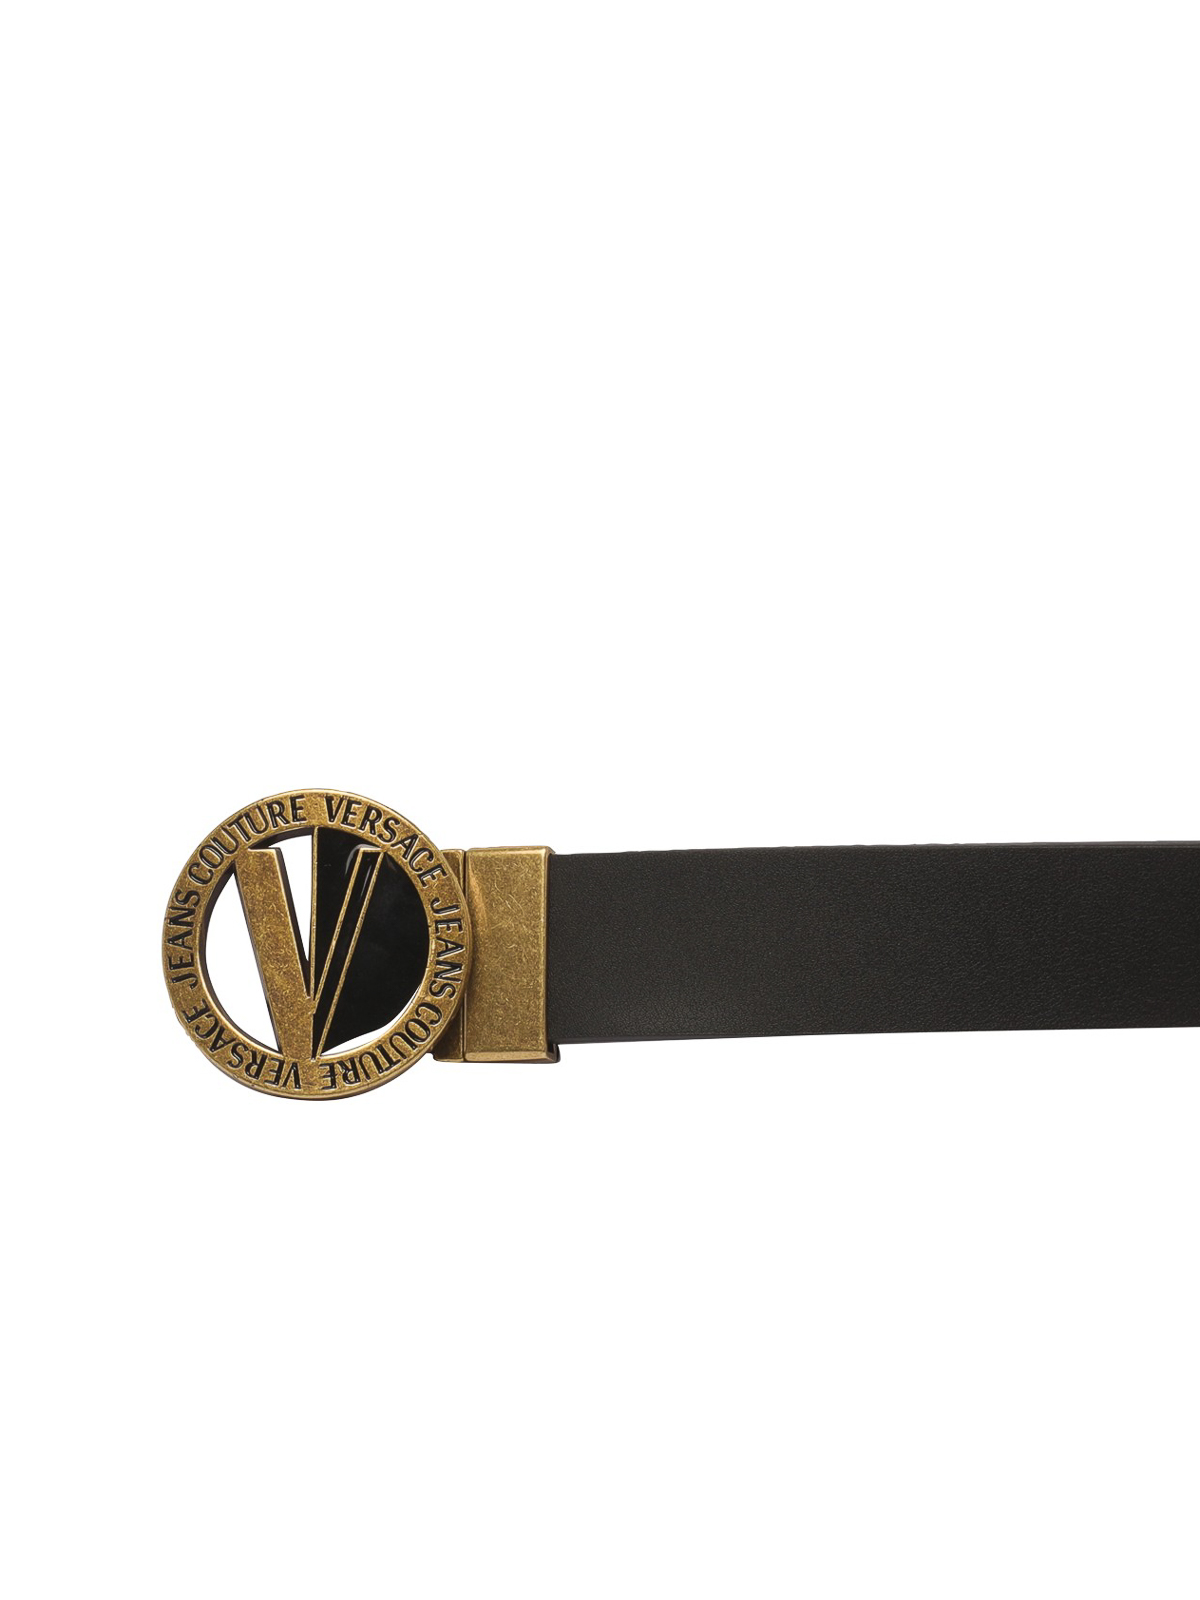 New Versace Jeans Couture Black V-Emblem Calfskin Black Belt Size